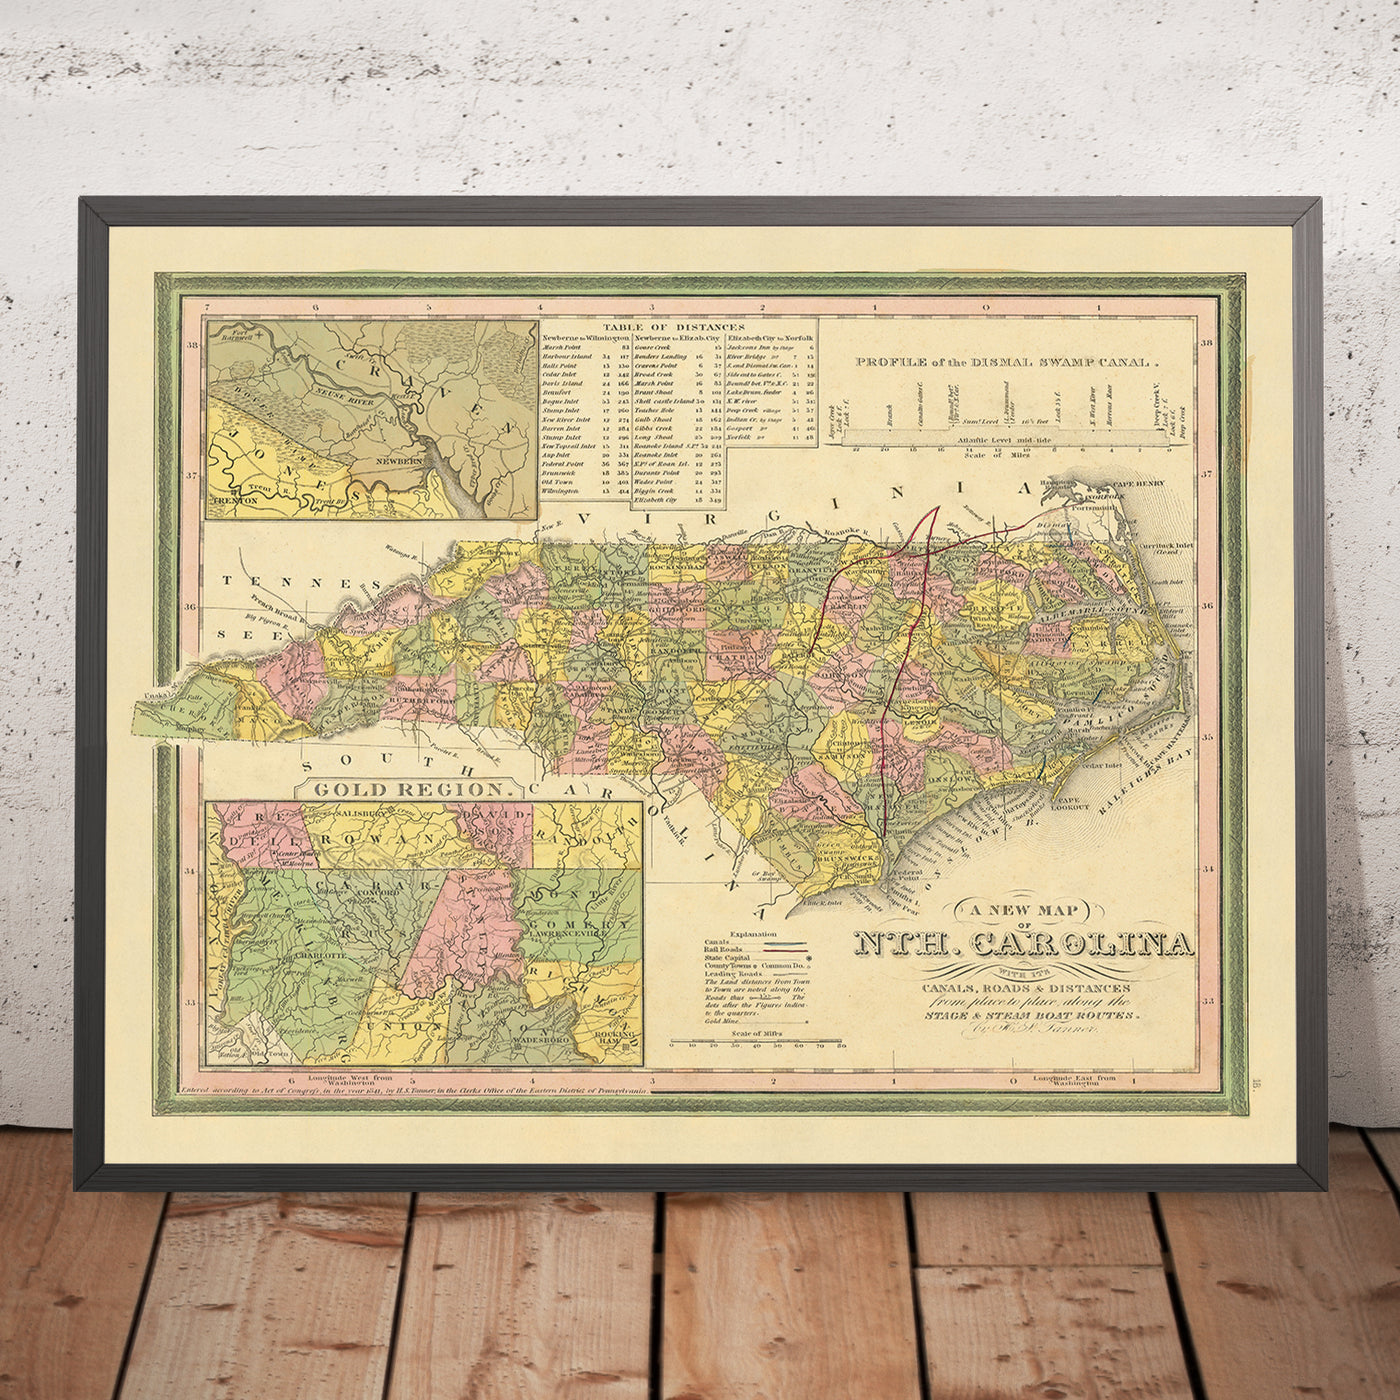 Alte Karte von North Carolina von Tanner, 1841: Raleigh, Charlotte, Asheville, Greensboro und Wilmington